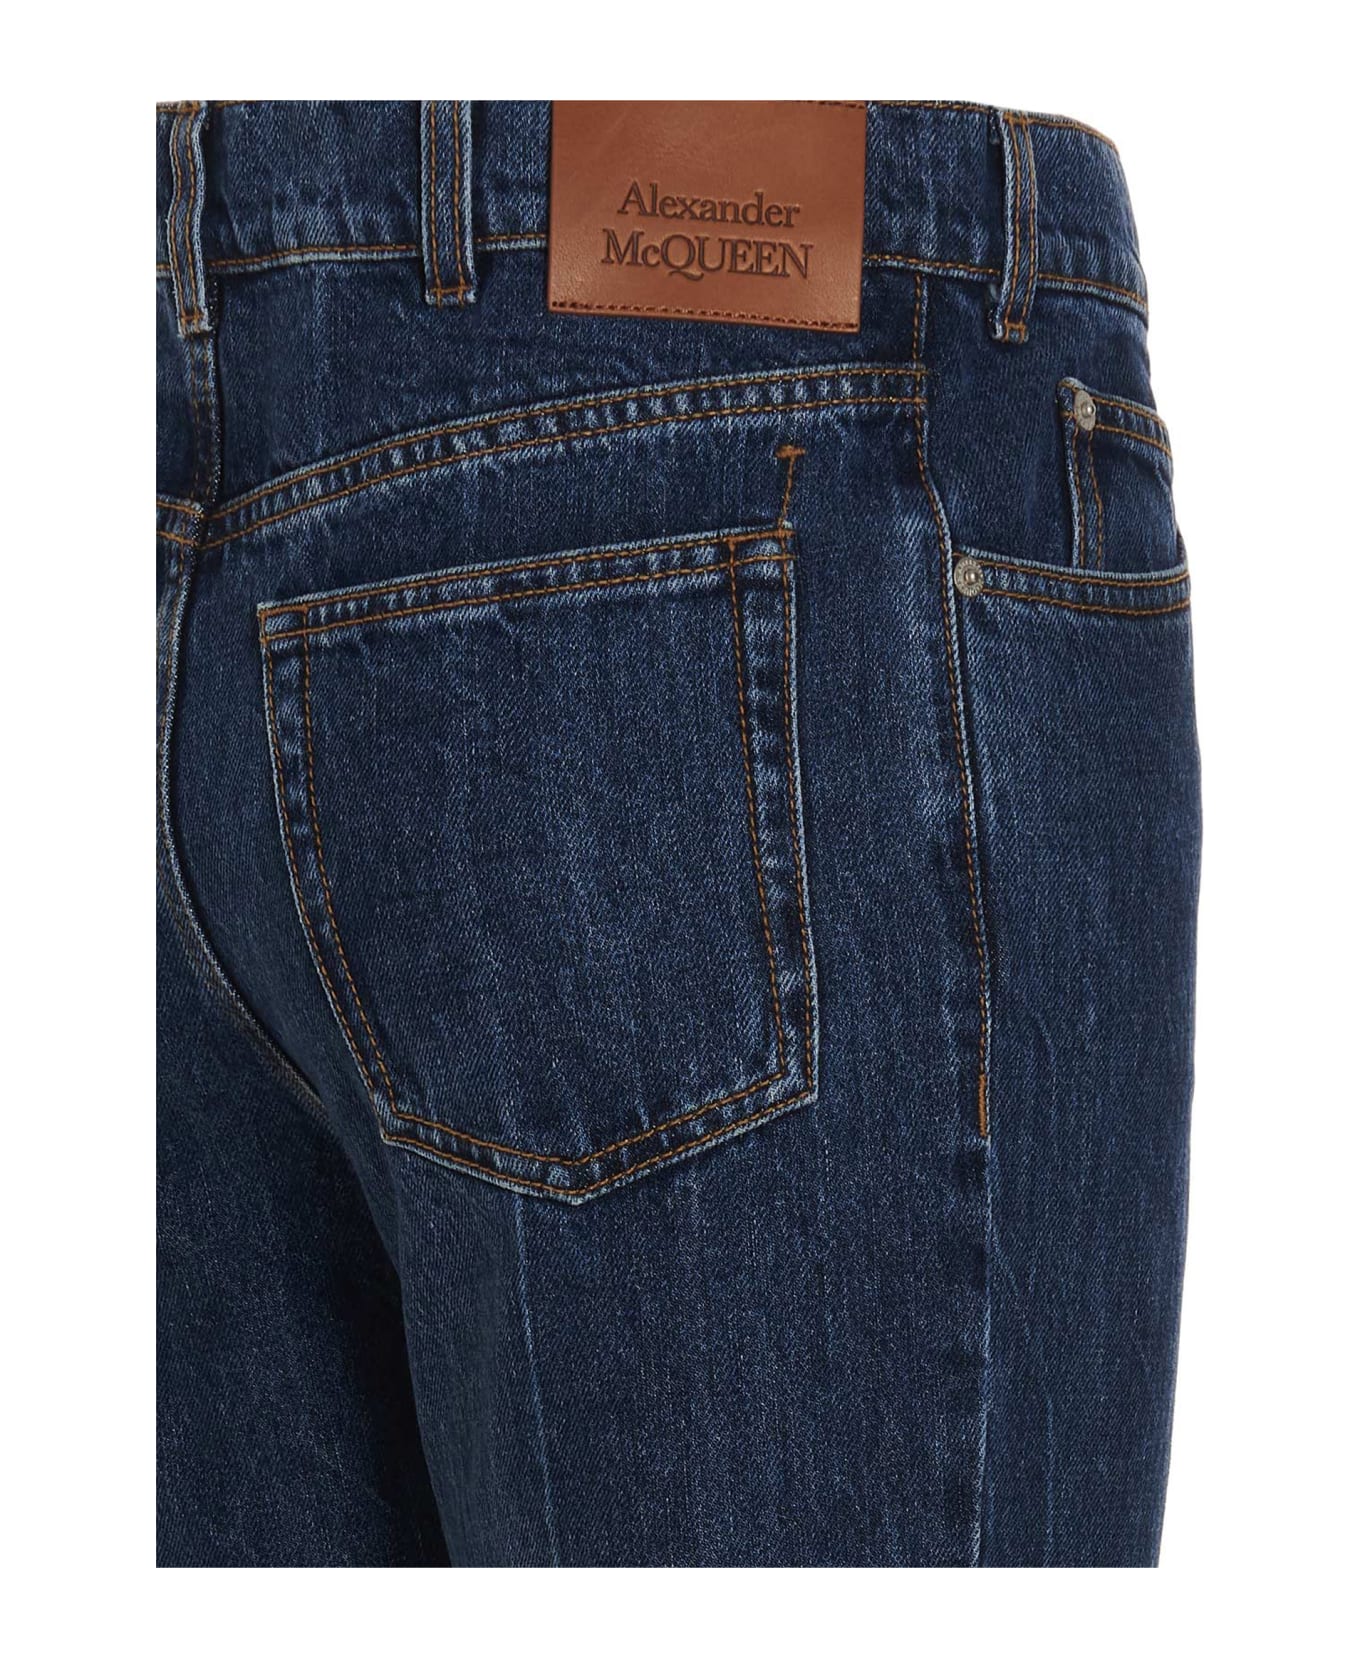 Alexander McQueen Logo Patch Jeans - Blue